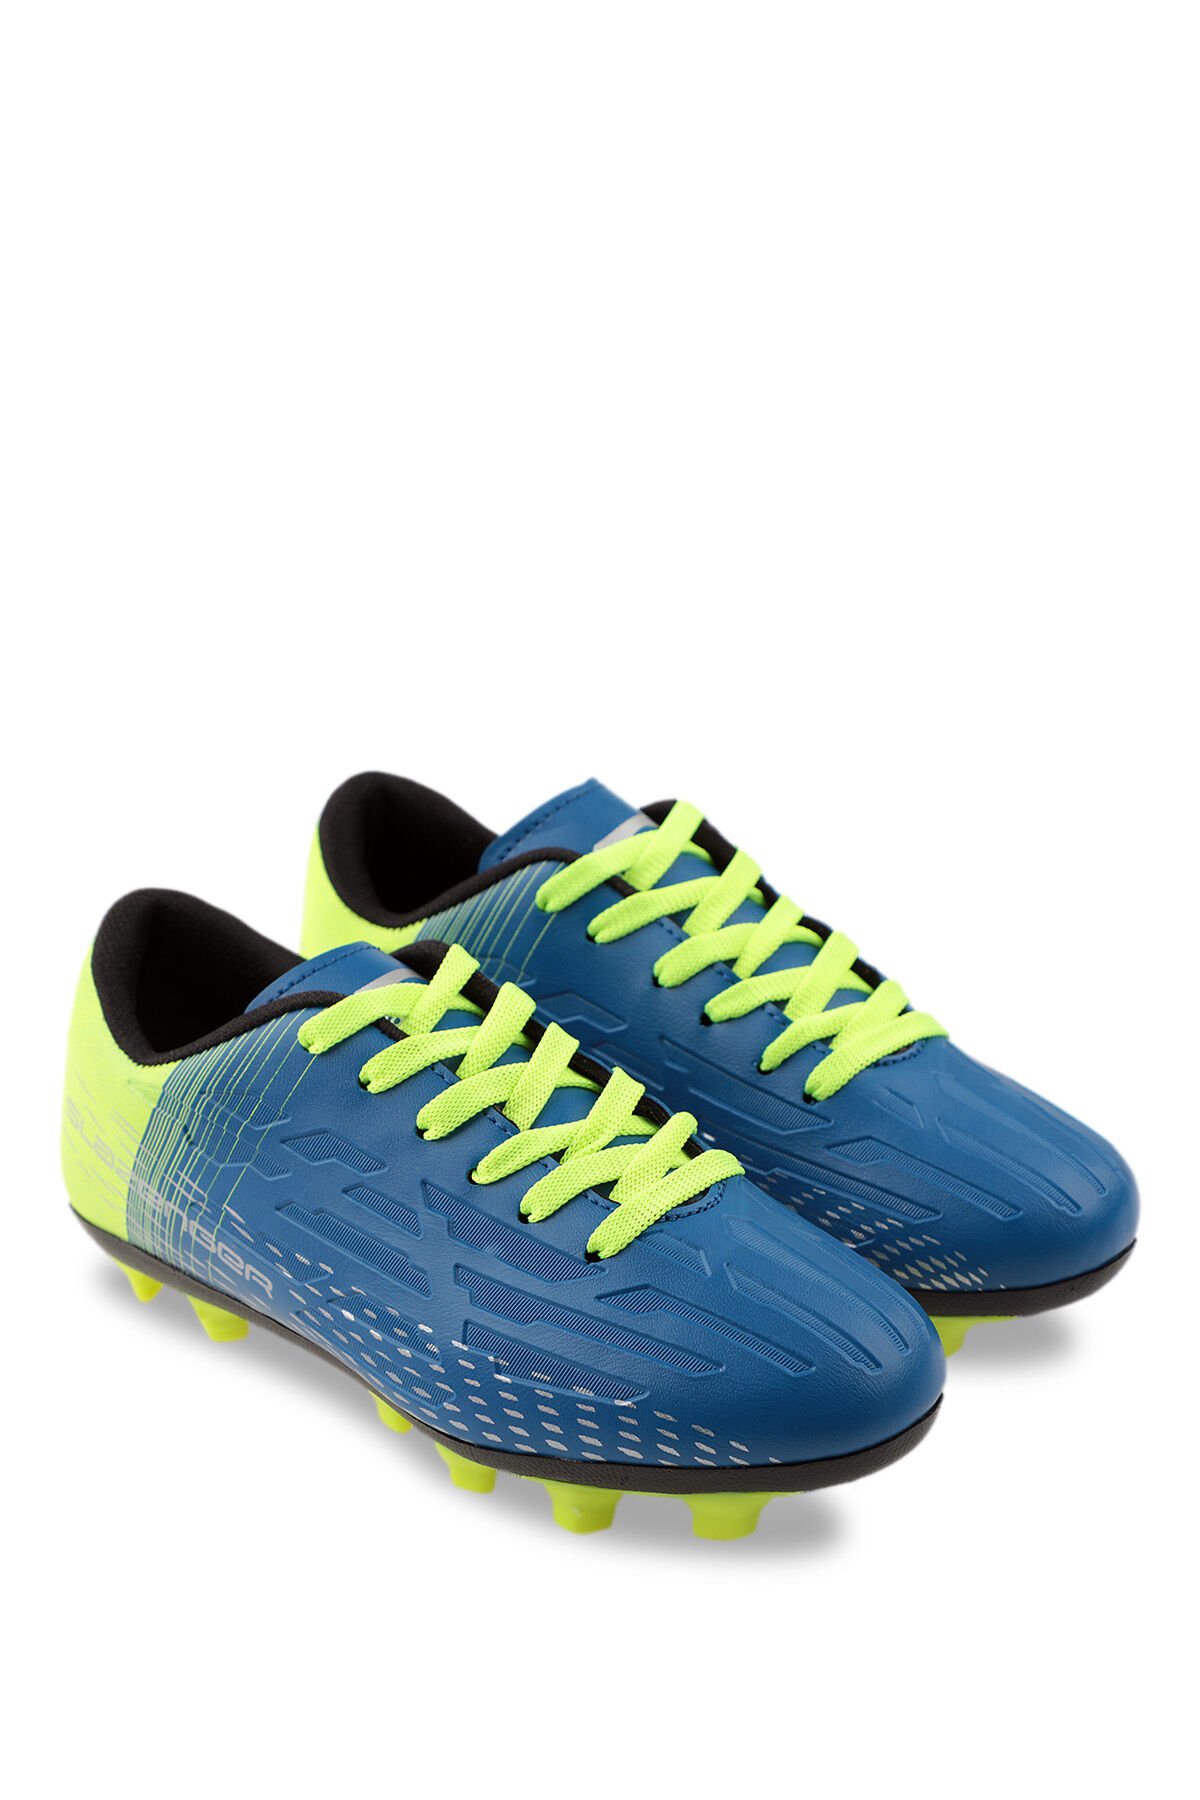 SCORE I KR Futbol Erkek Krampon Ayakkabı Mavi / Sarı - Thumbnail